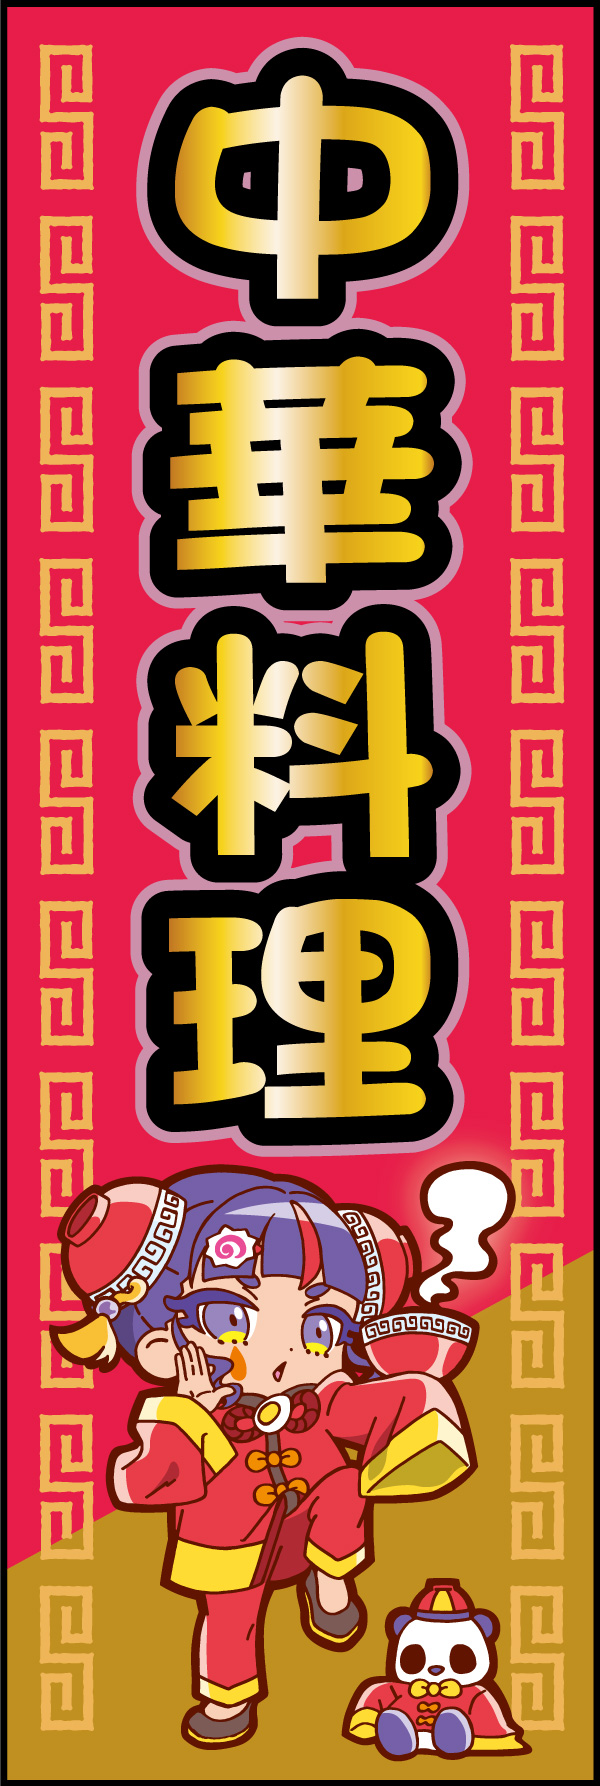 中華料理 152_01 「中華料理」の幟です。チャイニーズコスプをしたアニメ風中華娘が目を引くのぼりです。明るい親しみやすさをアピールします。（M.H)